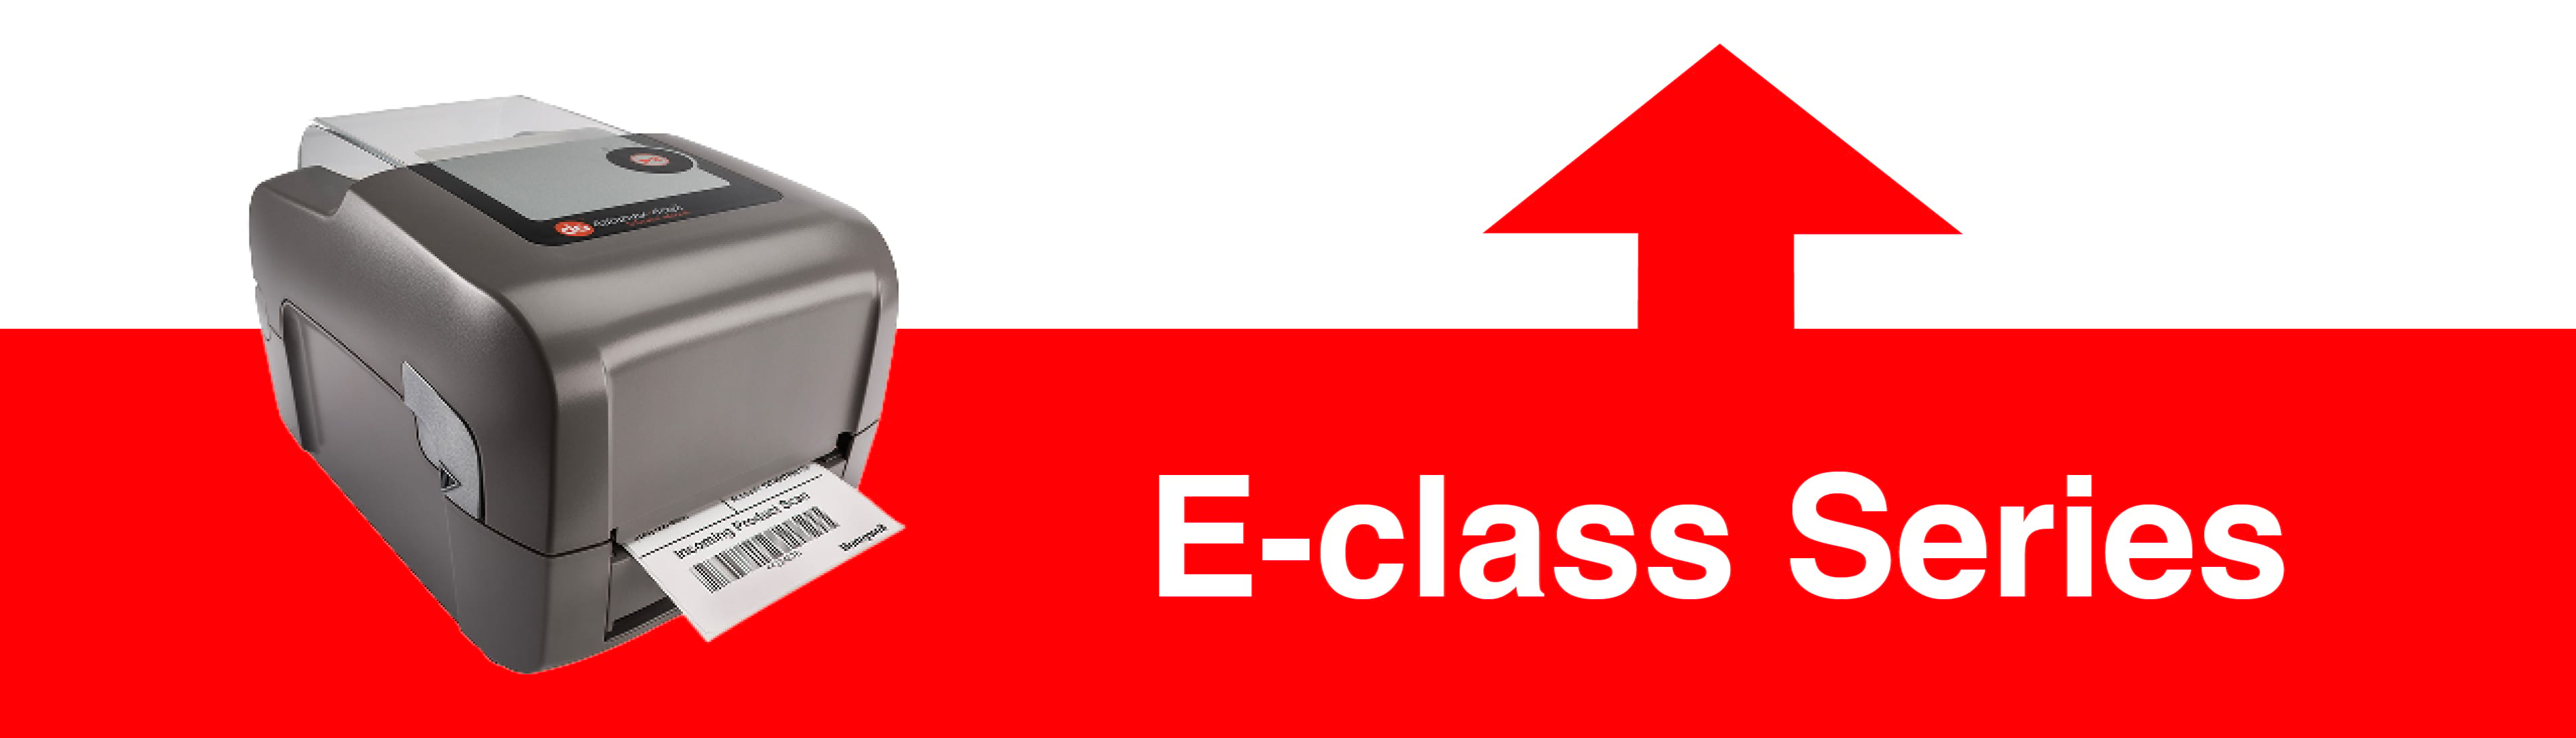 E-class Series